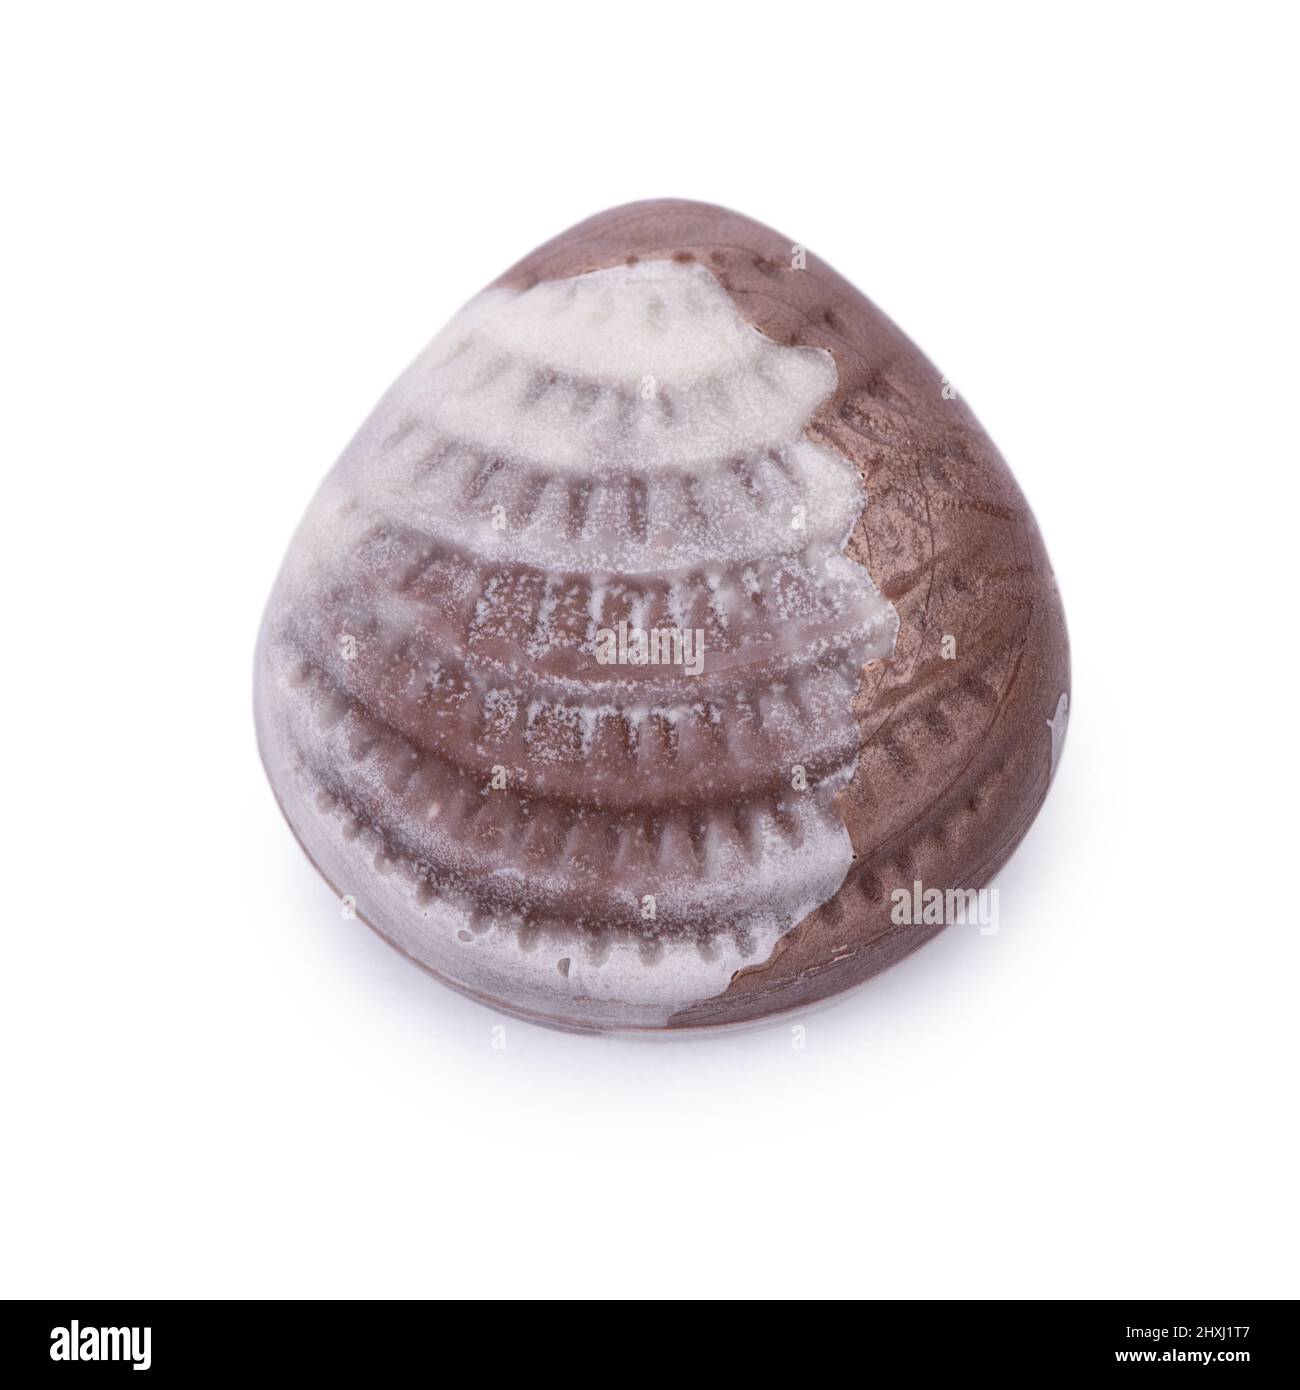 One seashell chocolate bar isolated on white background Stock Photo